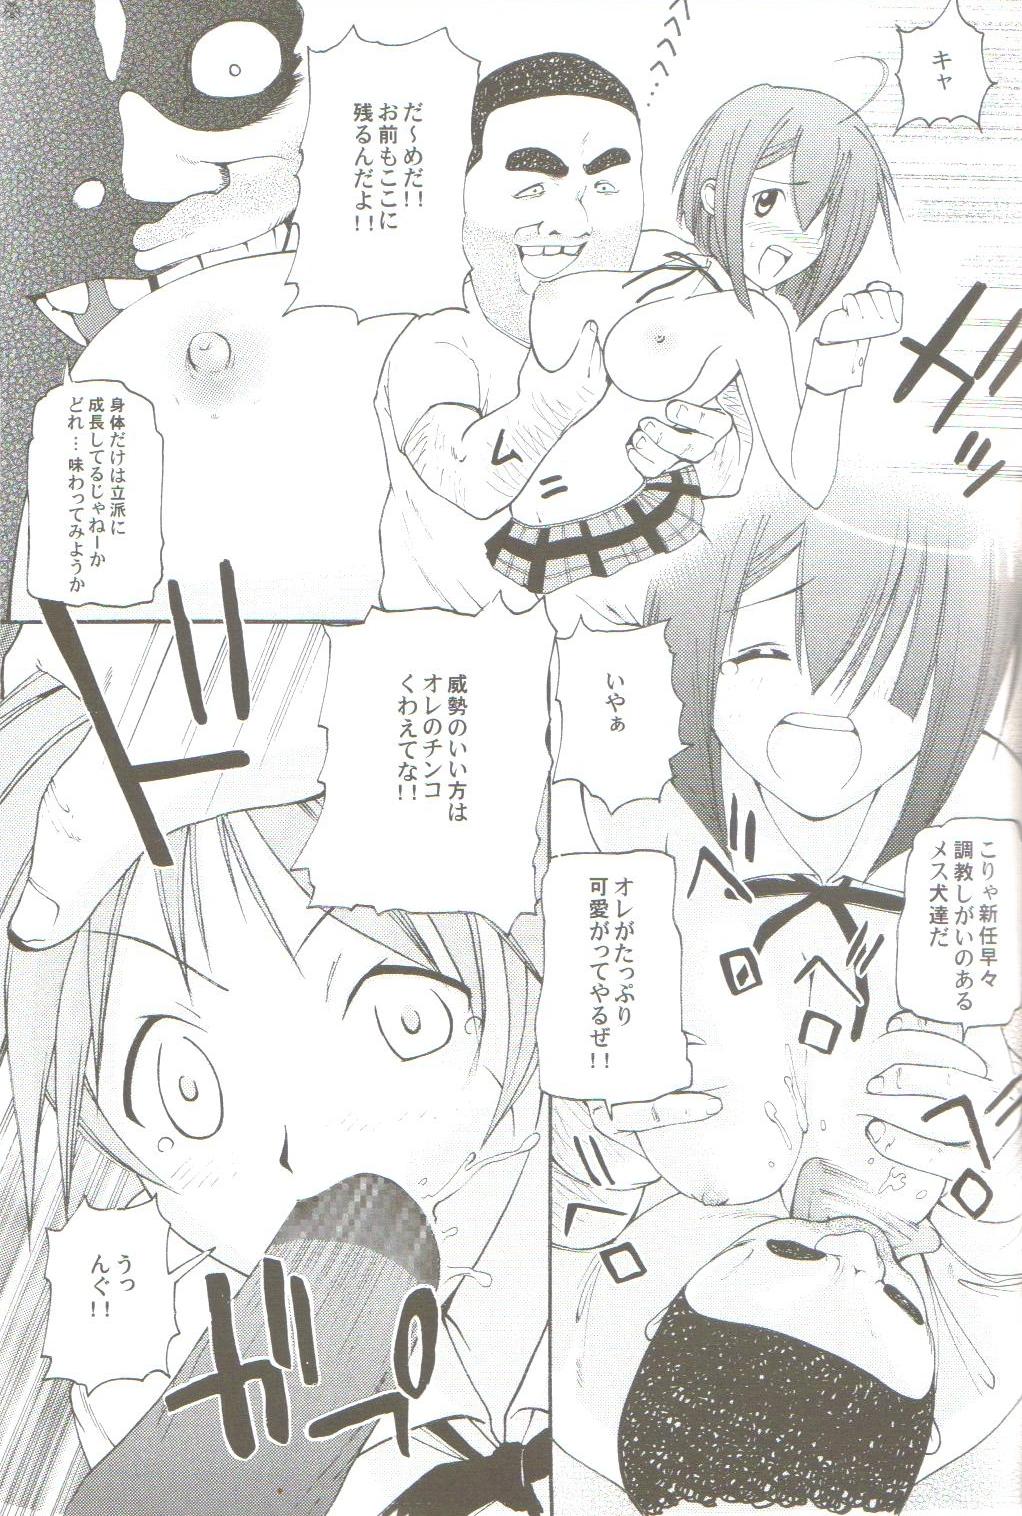 Eating Pussy Tokubetsu Zuugyo! - Mahou sensei negima Gostoso - Page 8